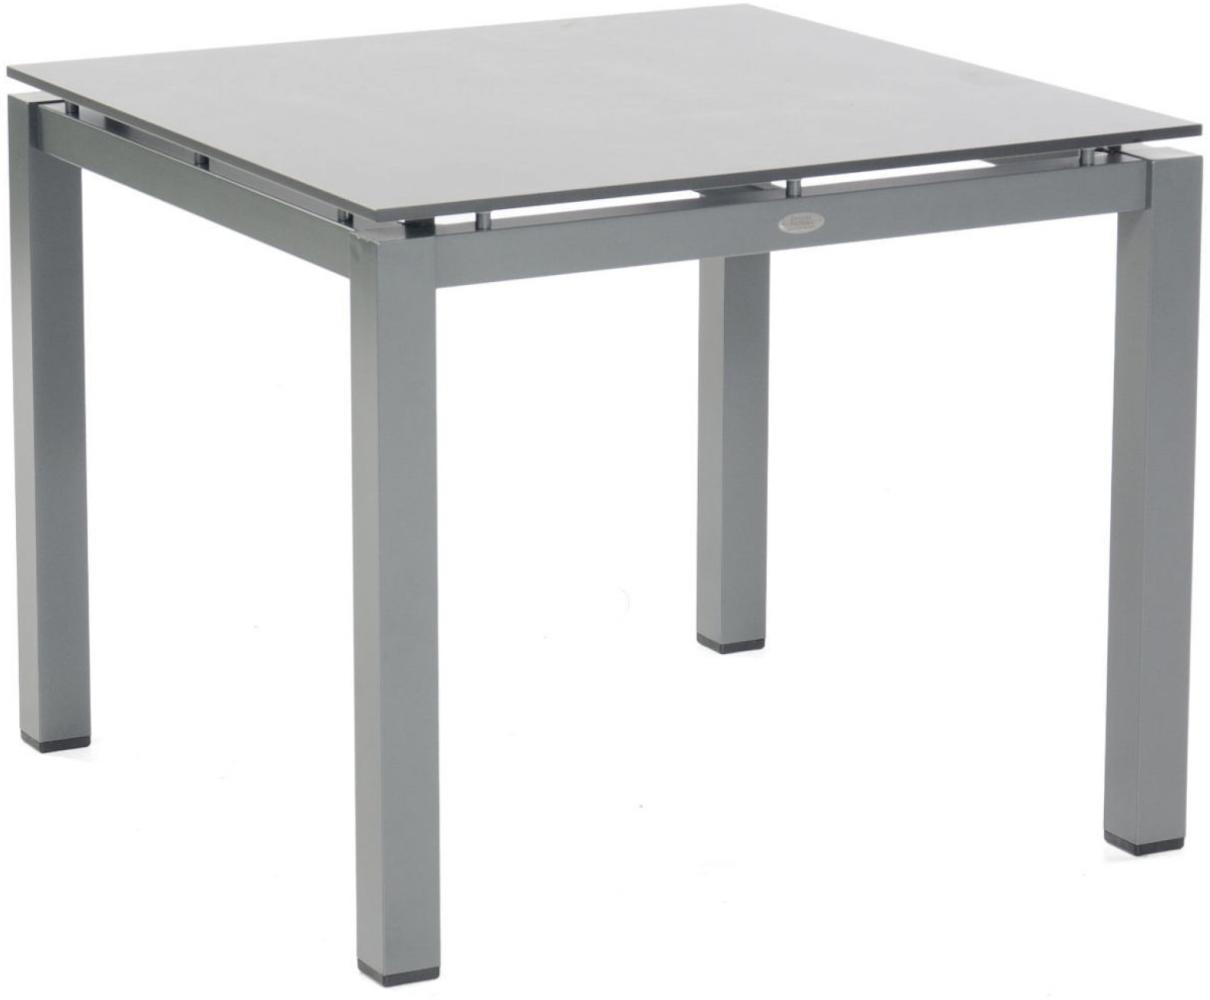 Sonnenpartner Gartentisch Base 90x90 cm Aluminium anthrazit Tischsystem HP Tischplatte Compact HPL sandstone Bild 1